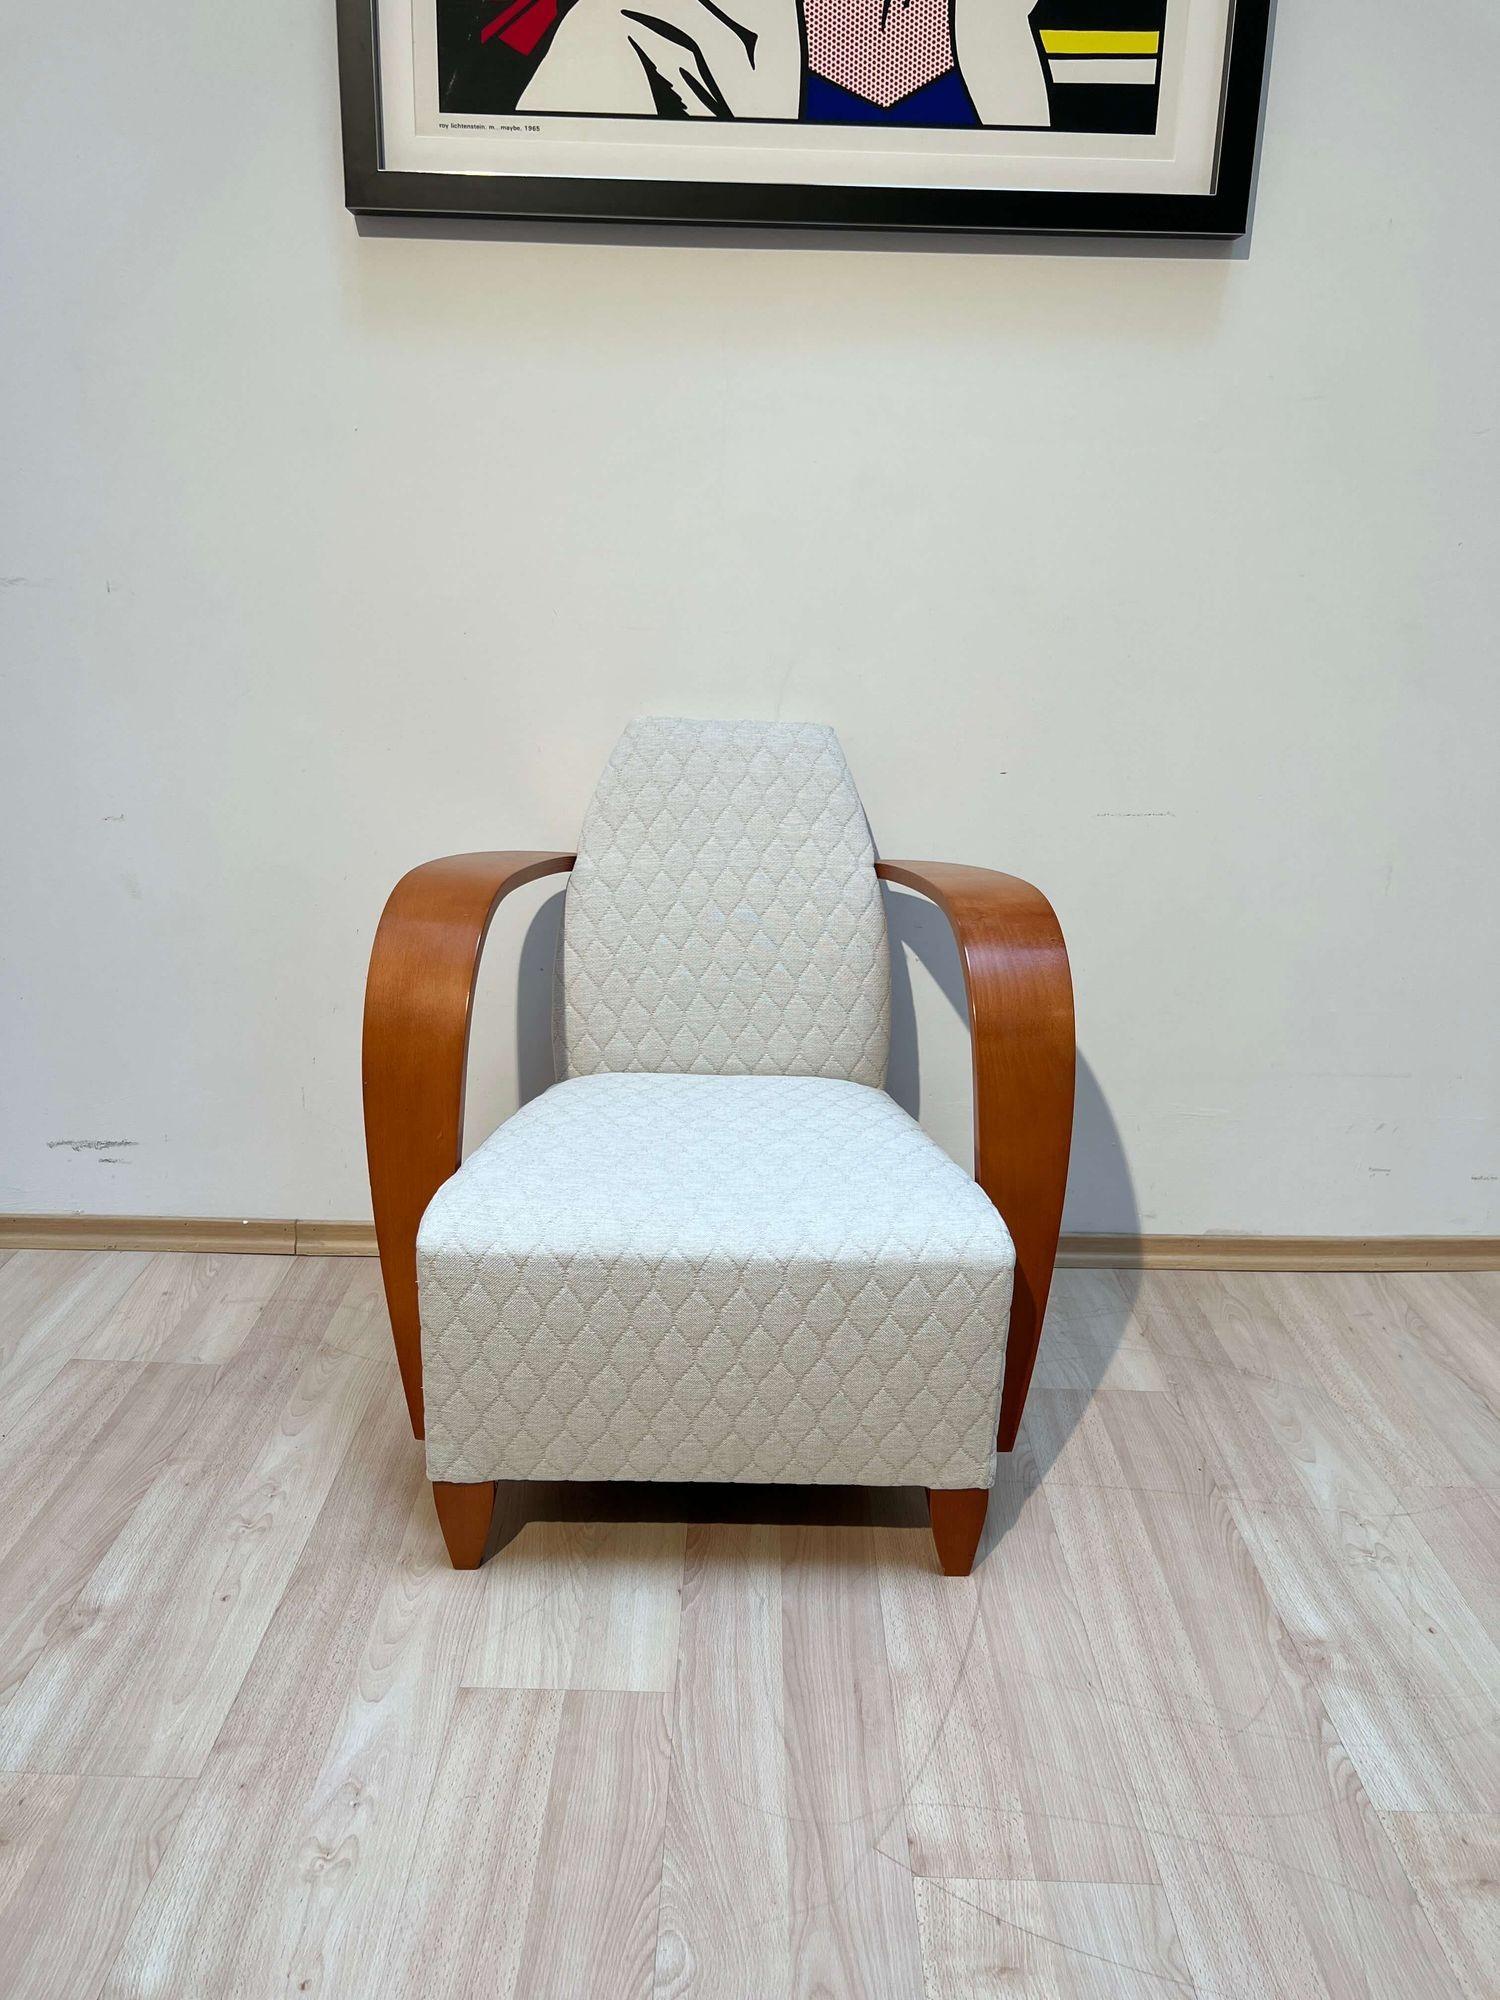 Eleganter Sessel im Vintage-Design, Club- oder Loungesessel aus Spanien, Ende der 1990er Jahre.
Hersteller: Andreu World SA, Spanien.
Kräftig geschwungene, hohe Armlehnen aus Buchensperrholz. Konische Beine aus massiver Buche. Gestell aus massiver